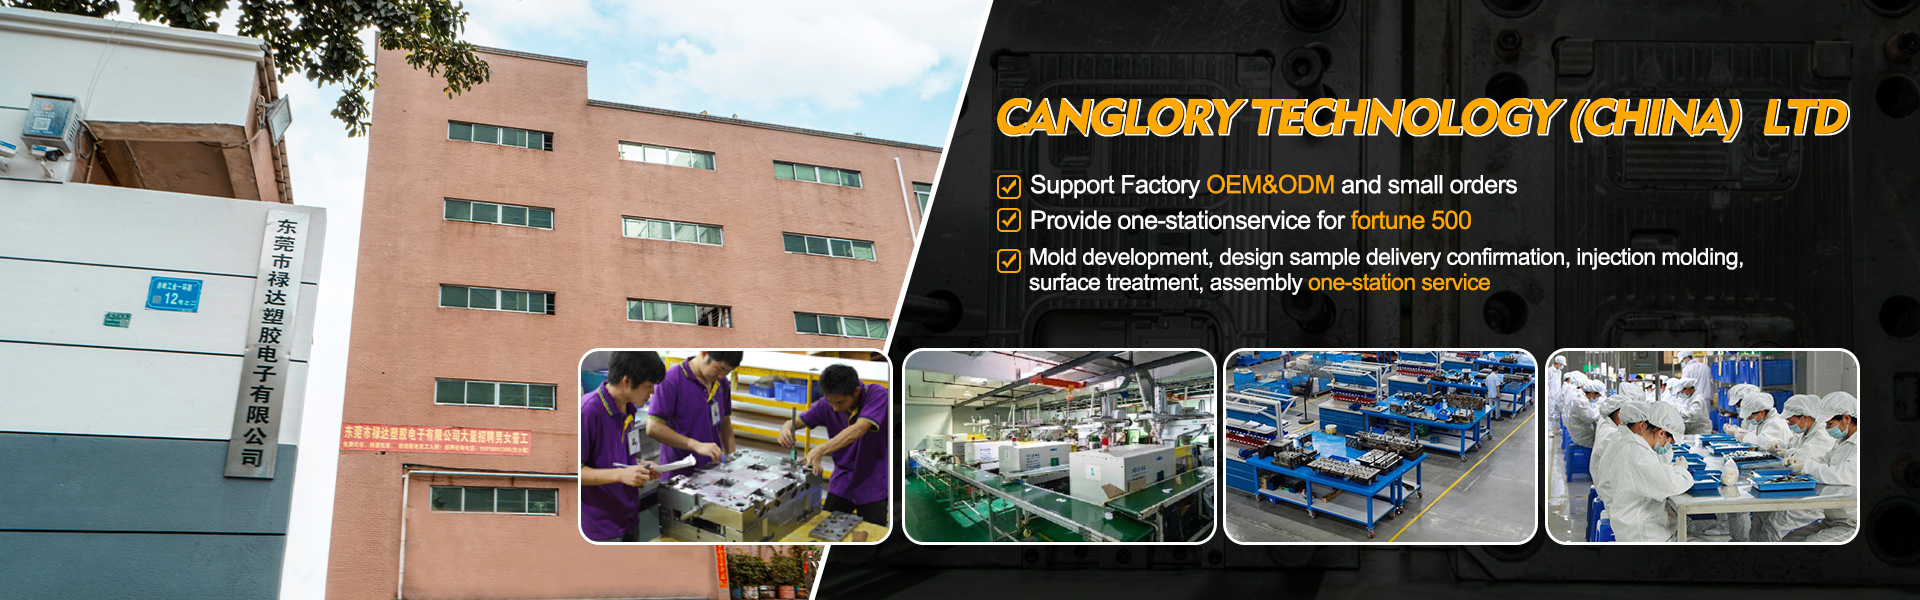 بيت - صب ، الحقن ، الشركة المصنعة للمعدات الأصلية|canglory technology (China) Ltd